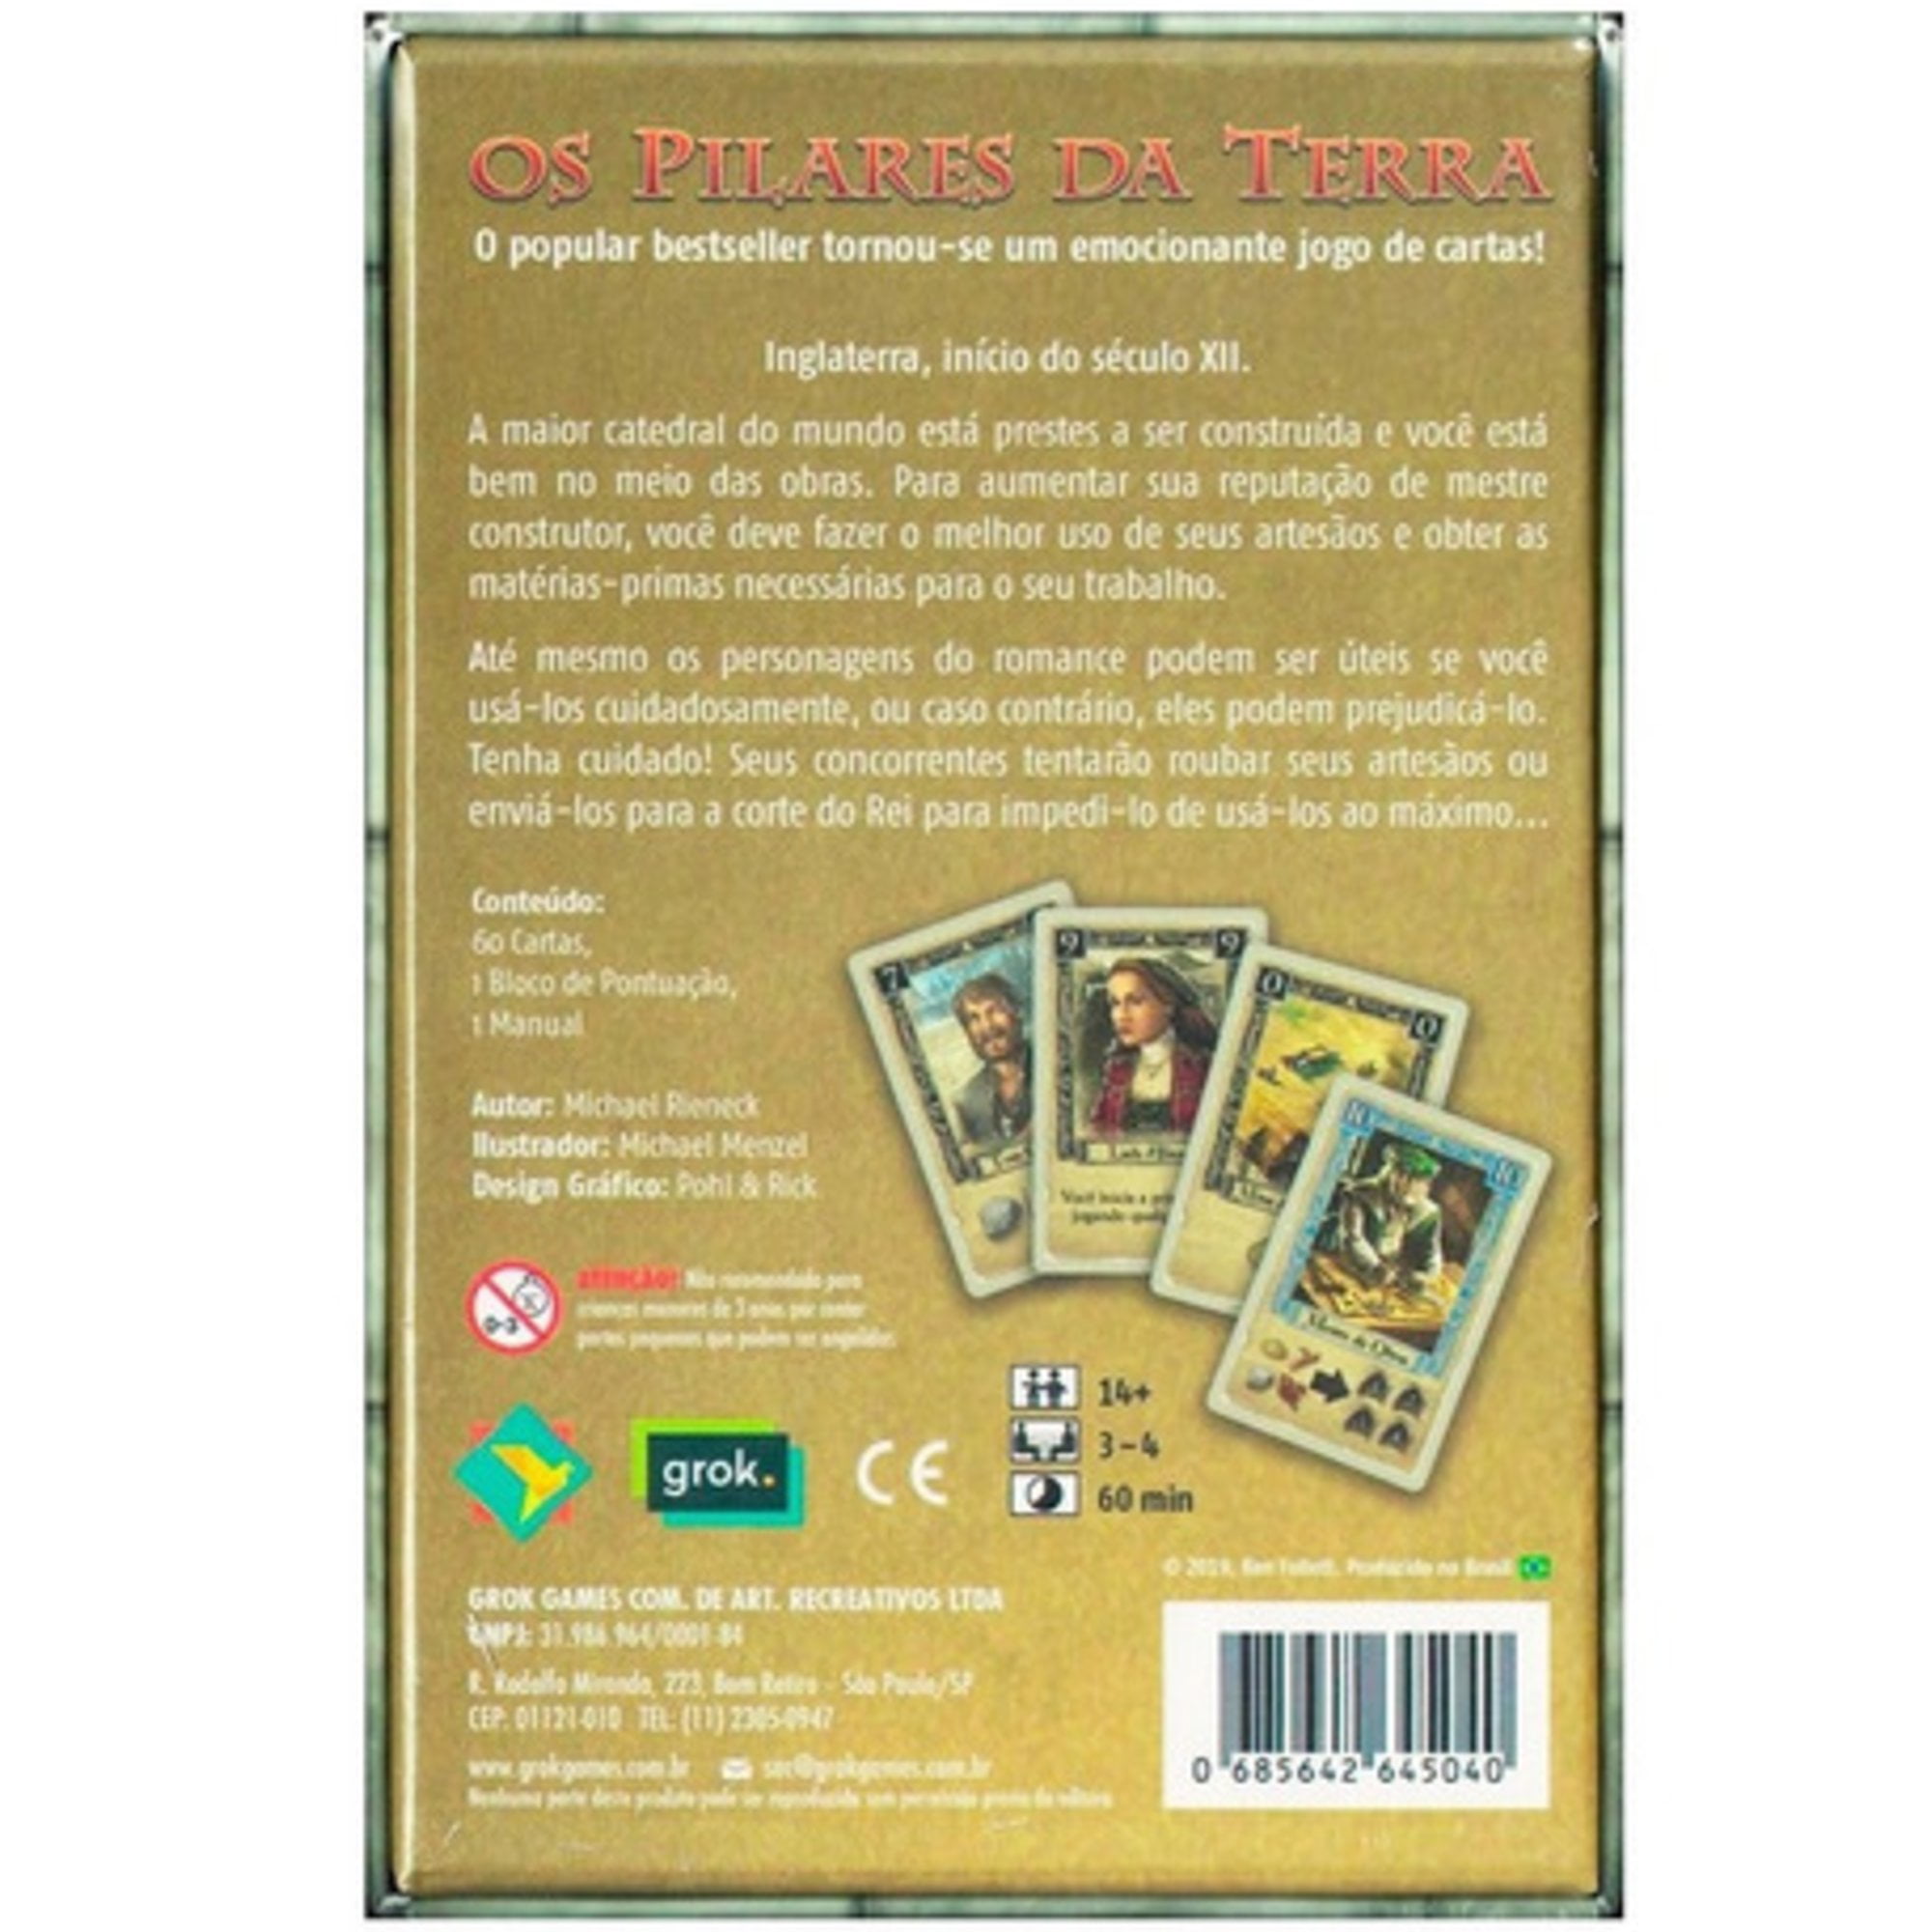 DVD - JOGADA DE REI